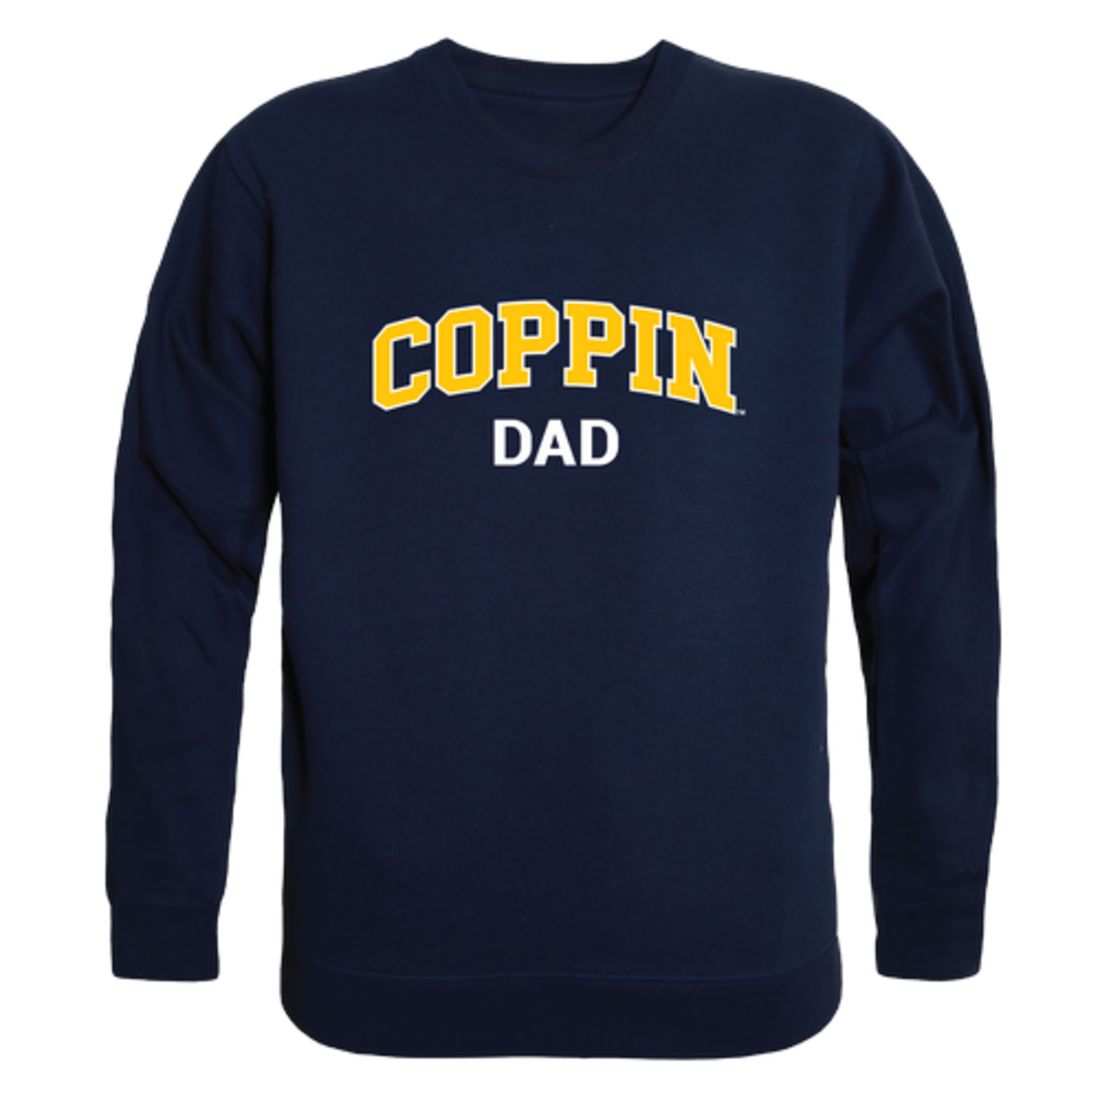 CSU Coppin State University Eagles Dad Fleece Crewneck Pullover Sweatshirt Heather Grey-Campus-Wardrobe